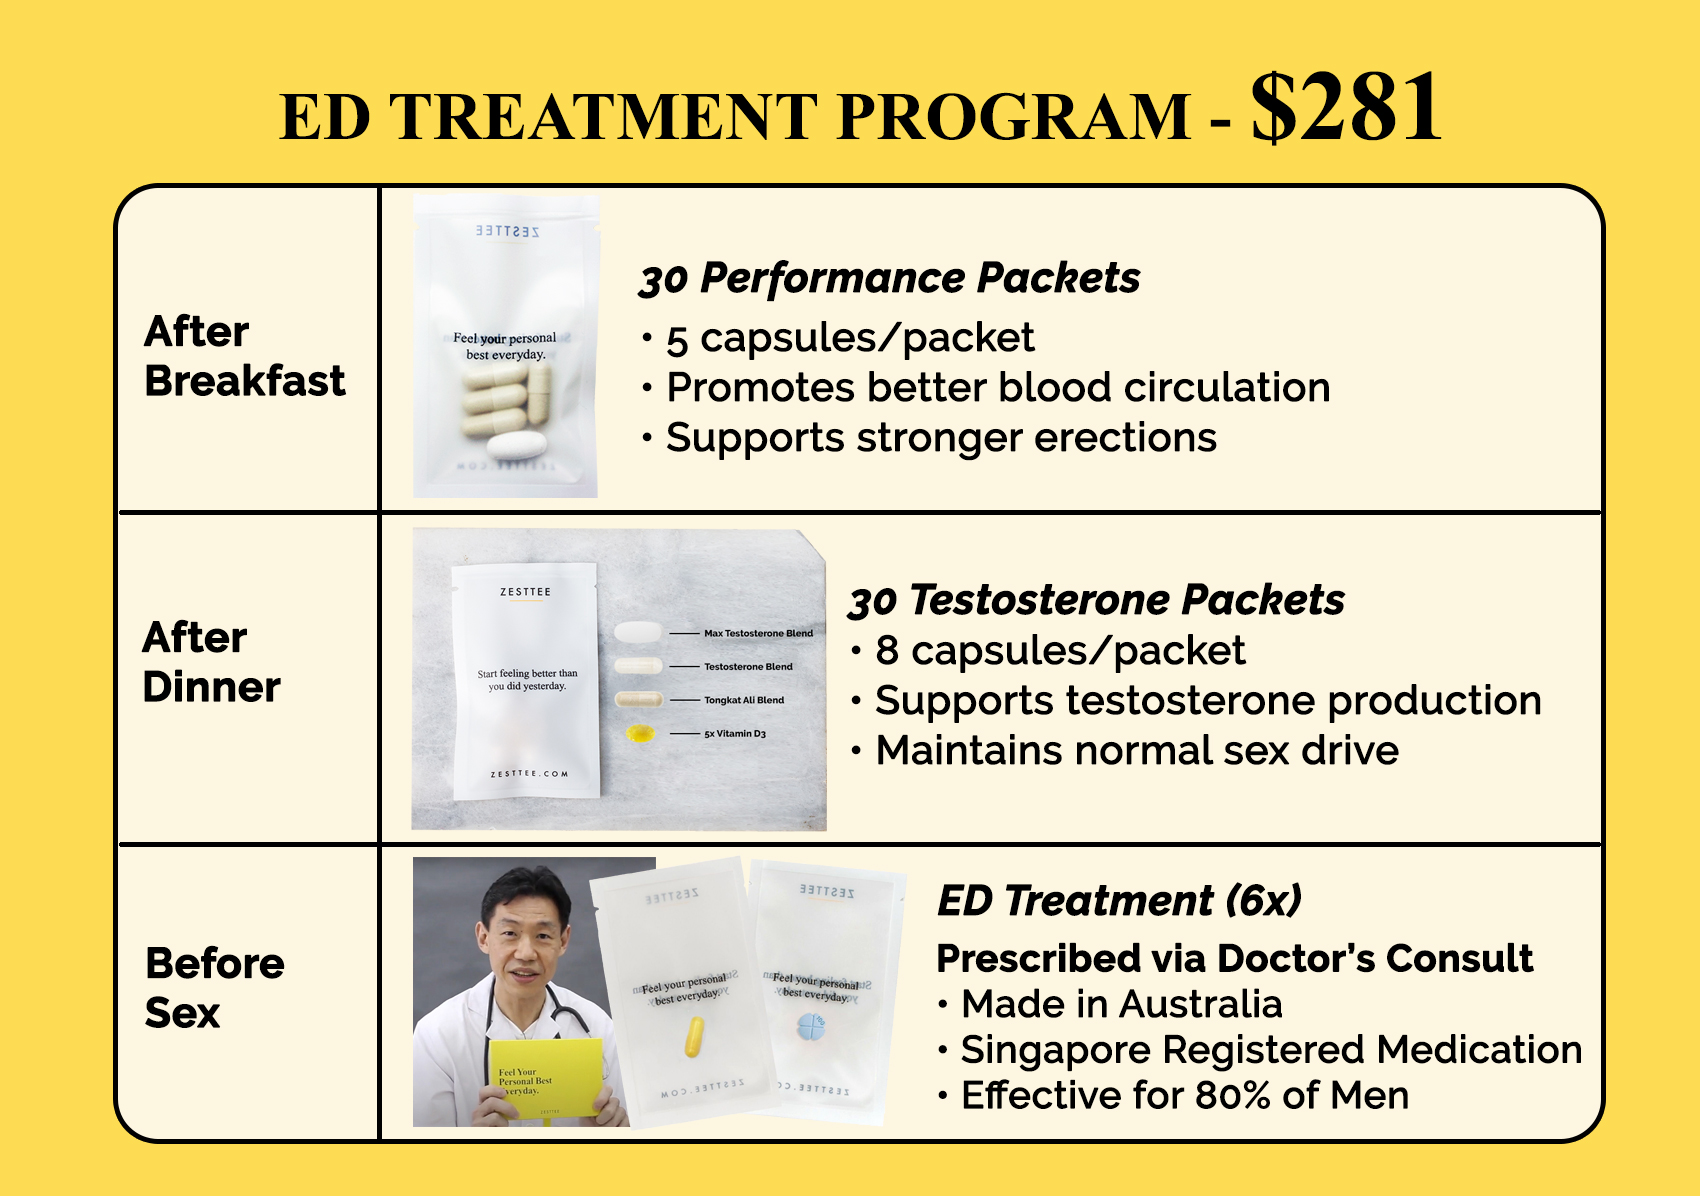 https://media.zesttee.com/cms/sg-ed-treatment-program-12807-a_9666-a.jpg